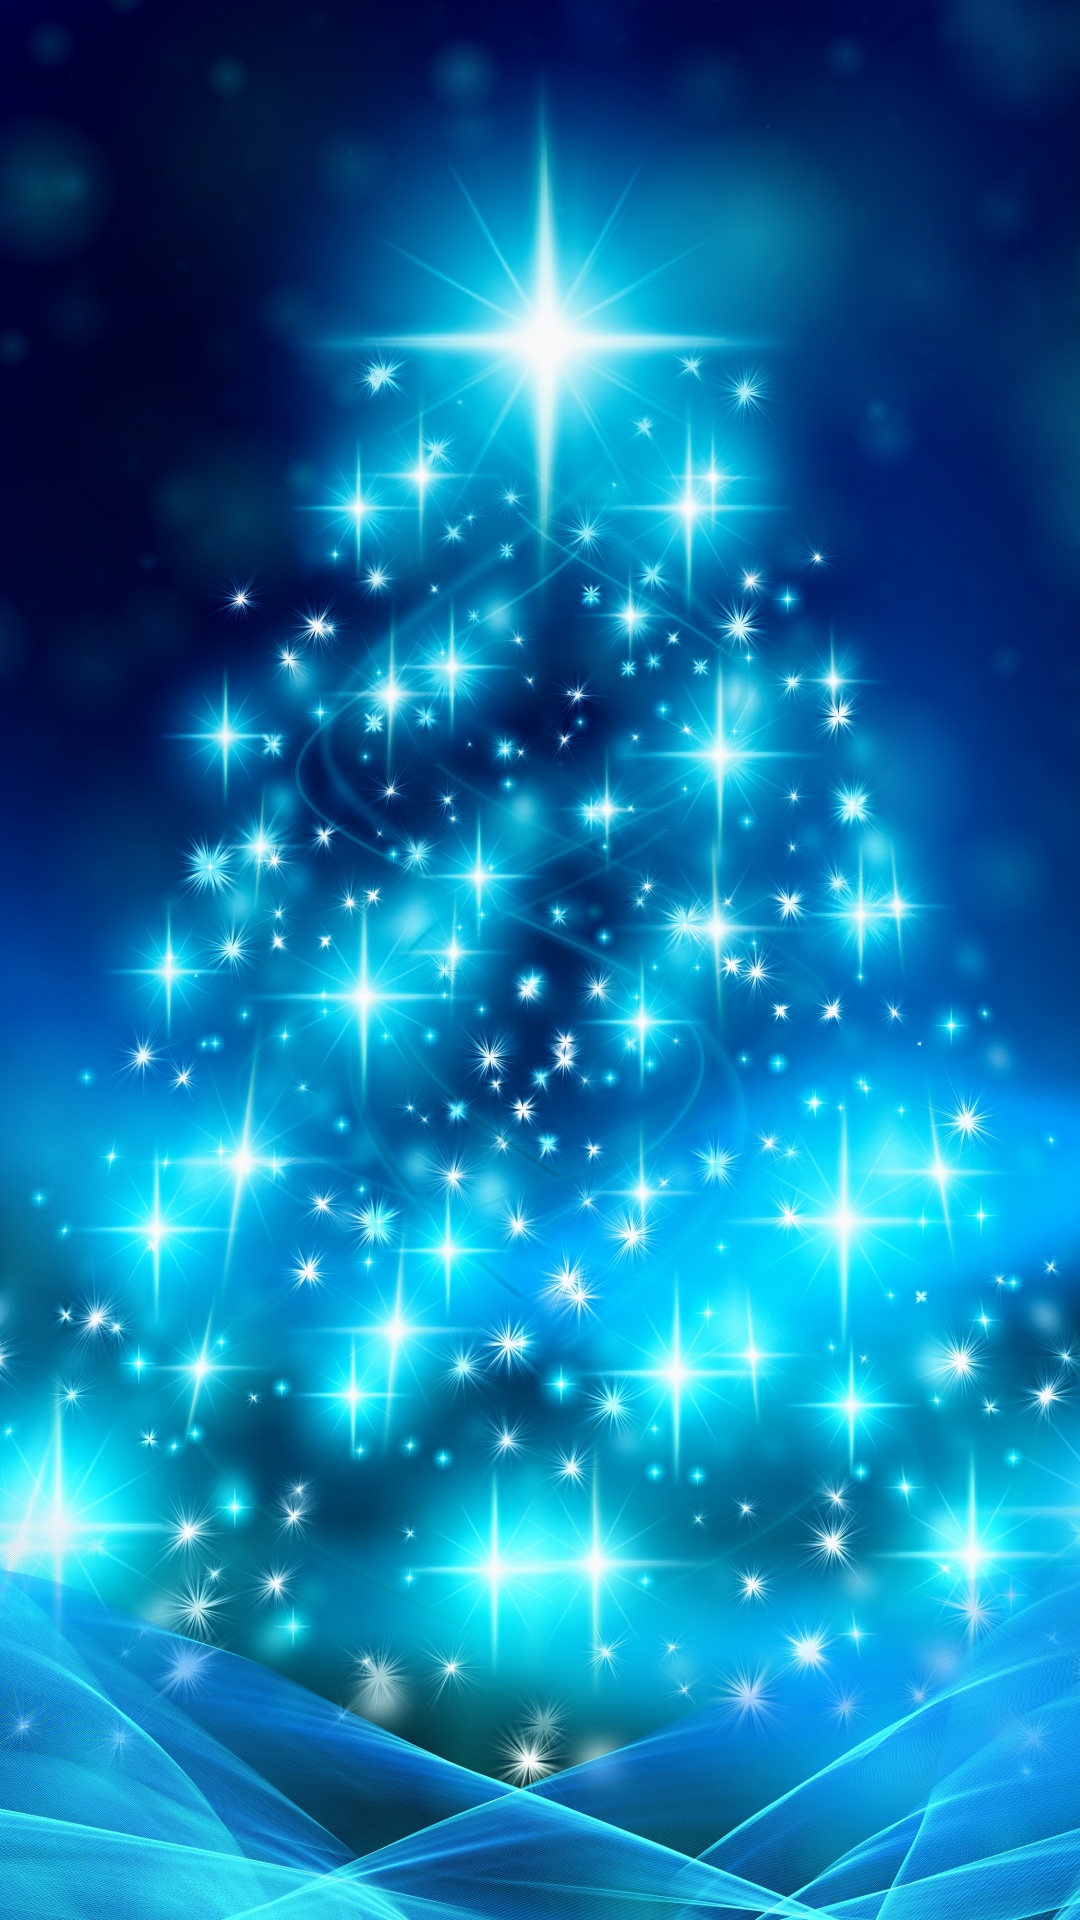 Weihnachten, Weihnachtsbaum, Weihnachtsdekoration, Blau, Baum. Wallpaper in 1080x1920 Resolution